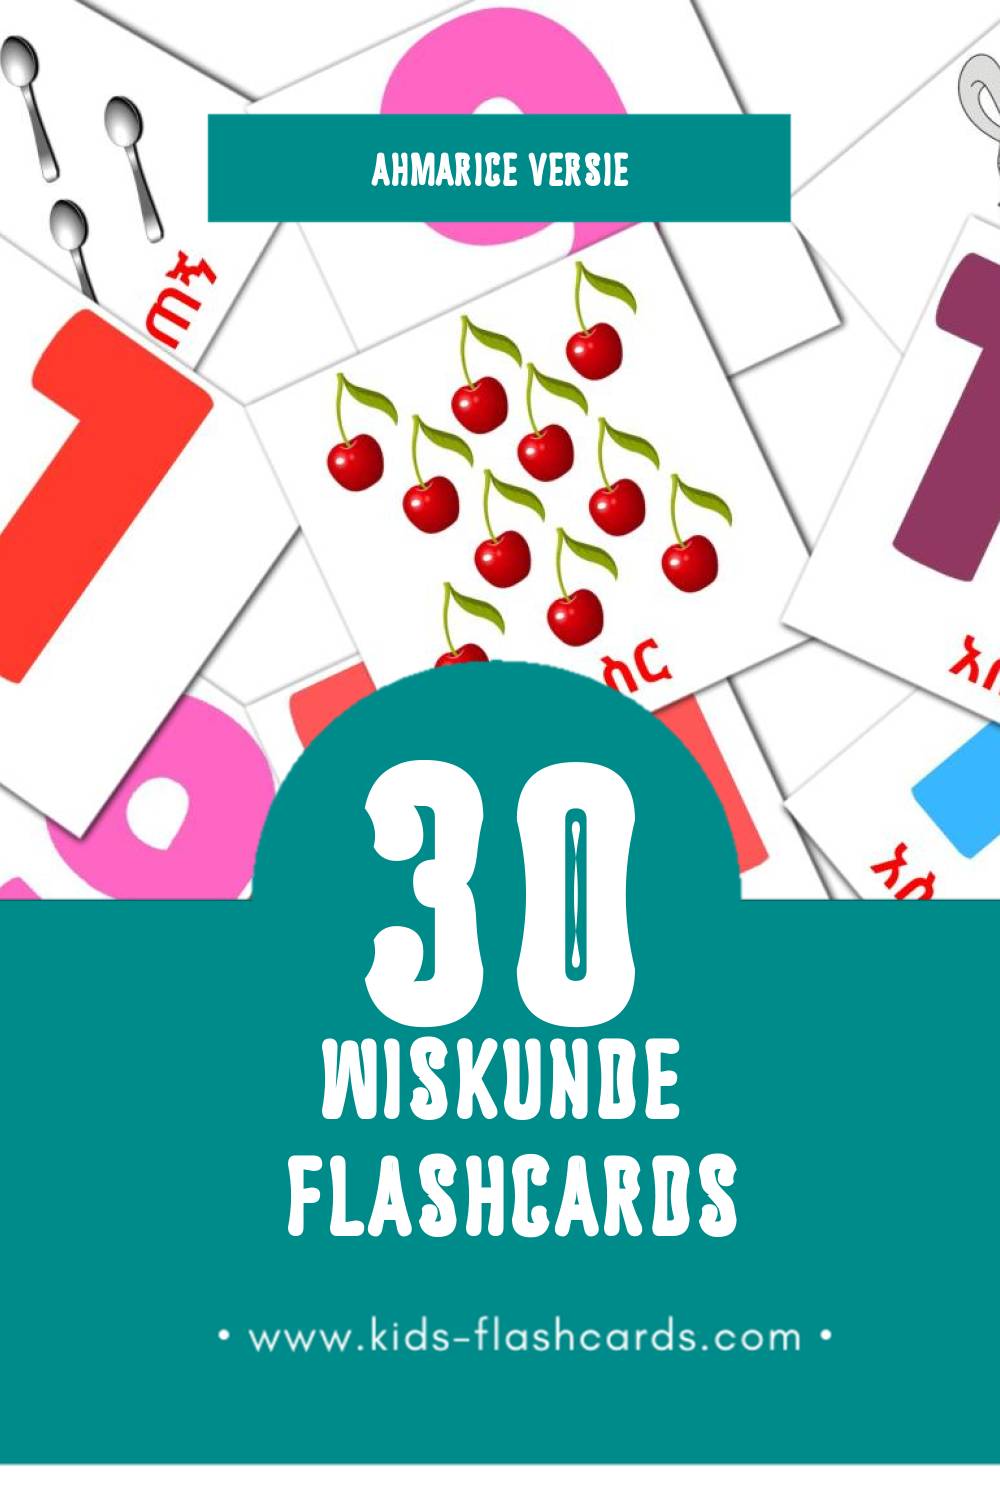 Visuele ሒሳብ Flashcards voor Kleuters (30 kaarten in het Ahmaric)